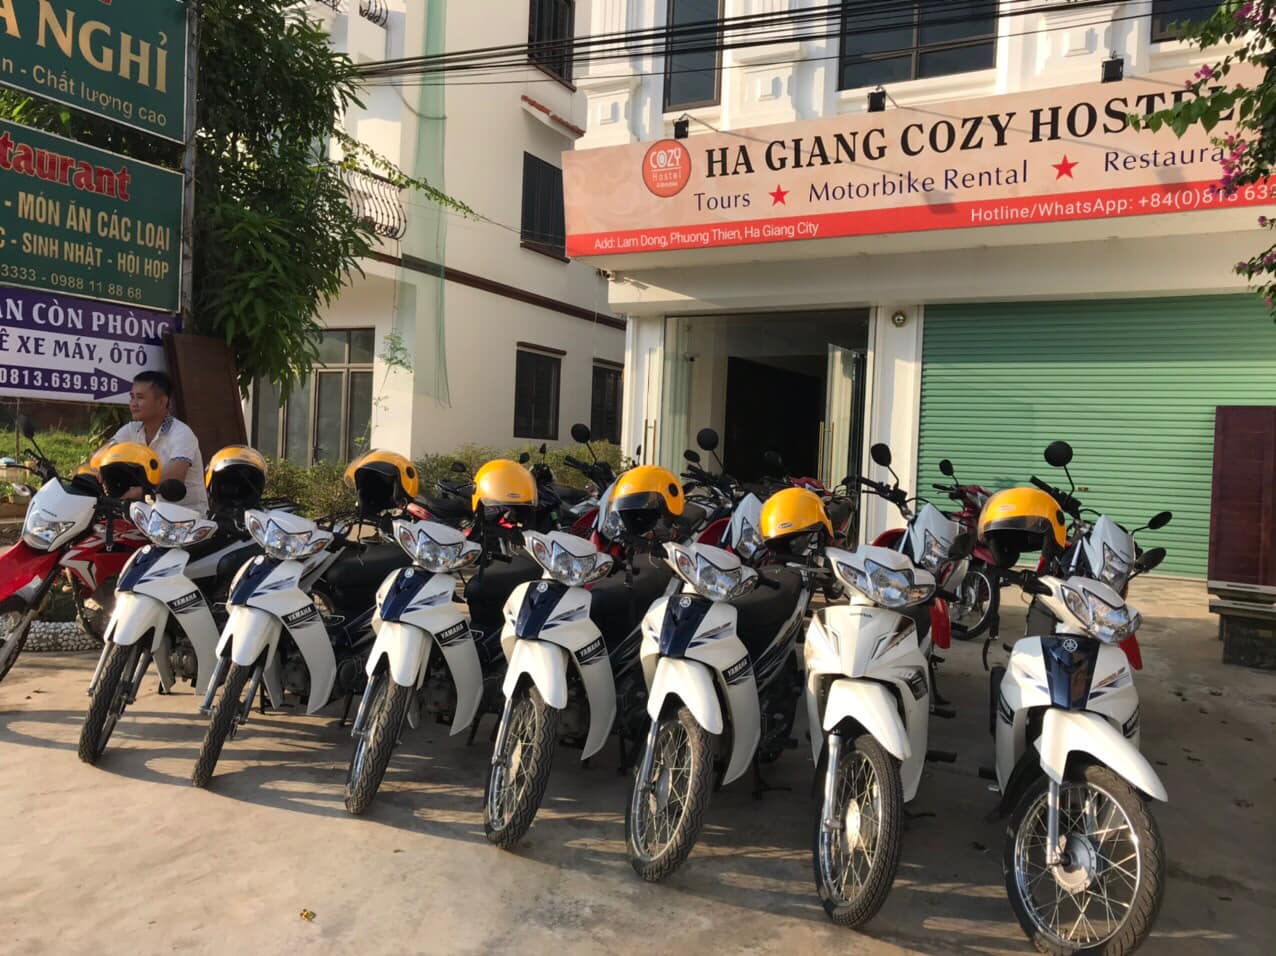 Linh motobike Ha Giang & homestay